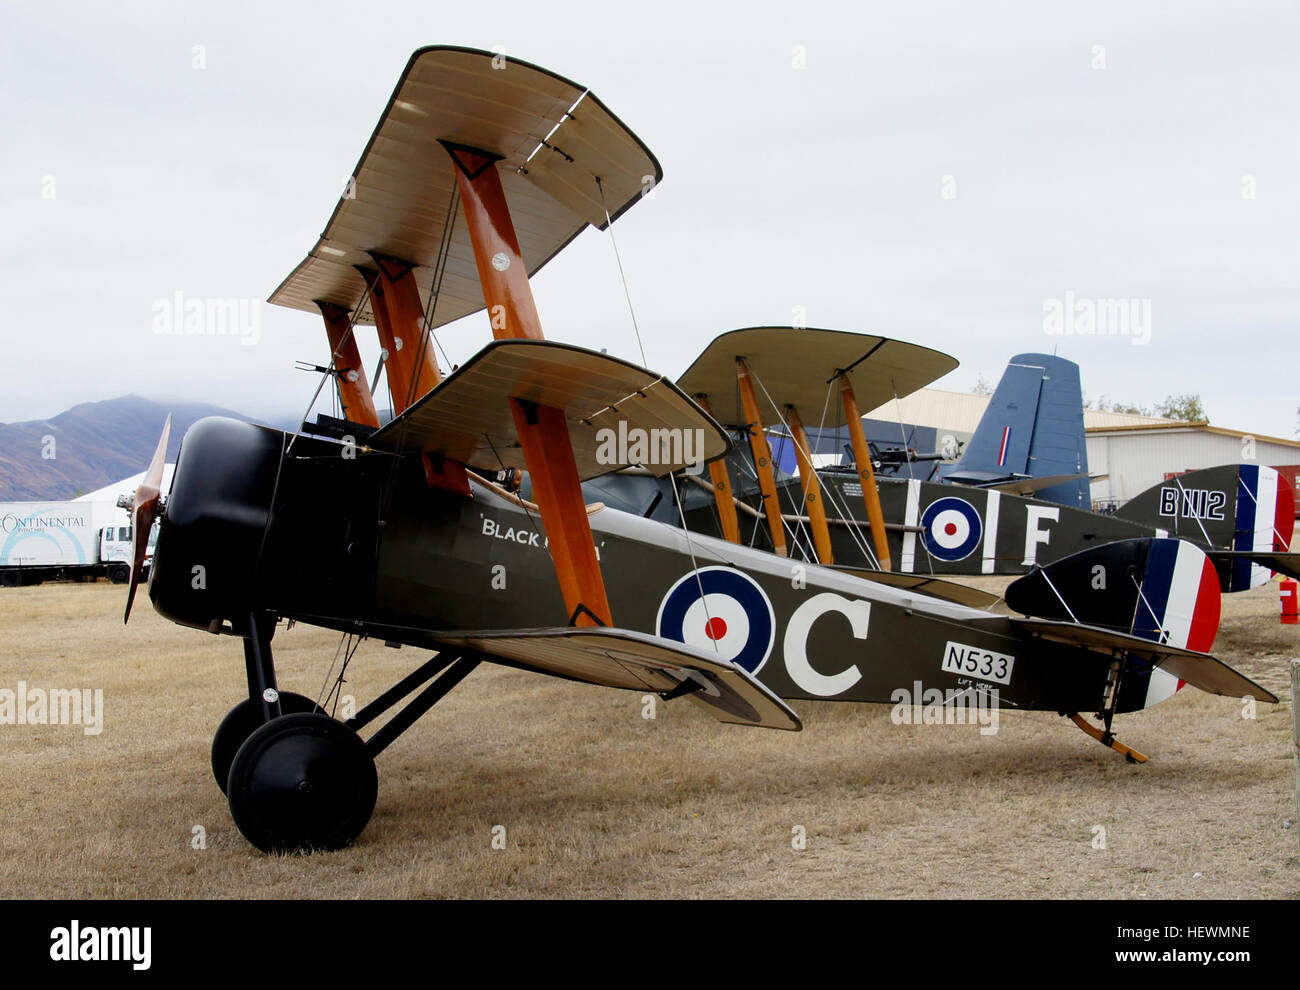 Le Sopwith Triplane était un avion de chasse monoplace conçu et fabriqué par le Sopwith Aviation Company pendant la Première Guerre mondiale. Il Tripehound pilotes surnommé la ou simplement les tripes. Banque D'Images